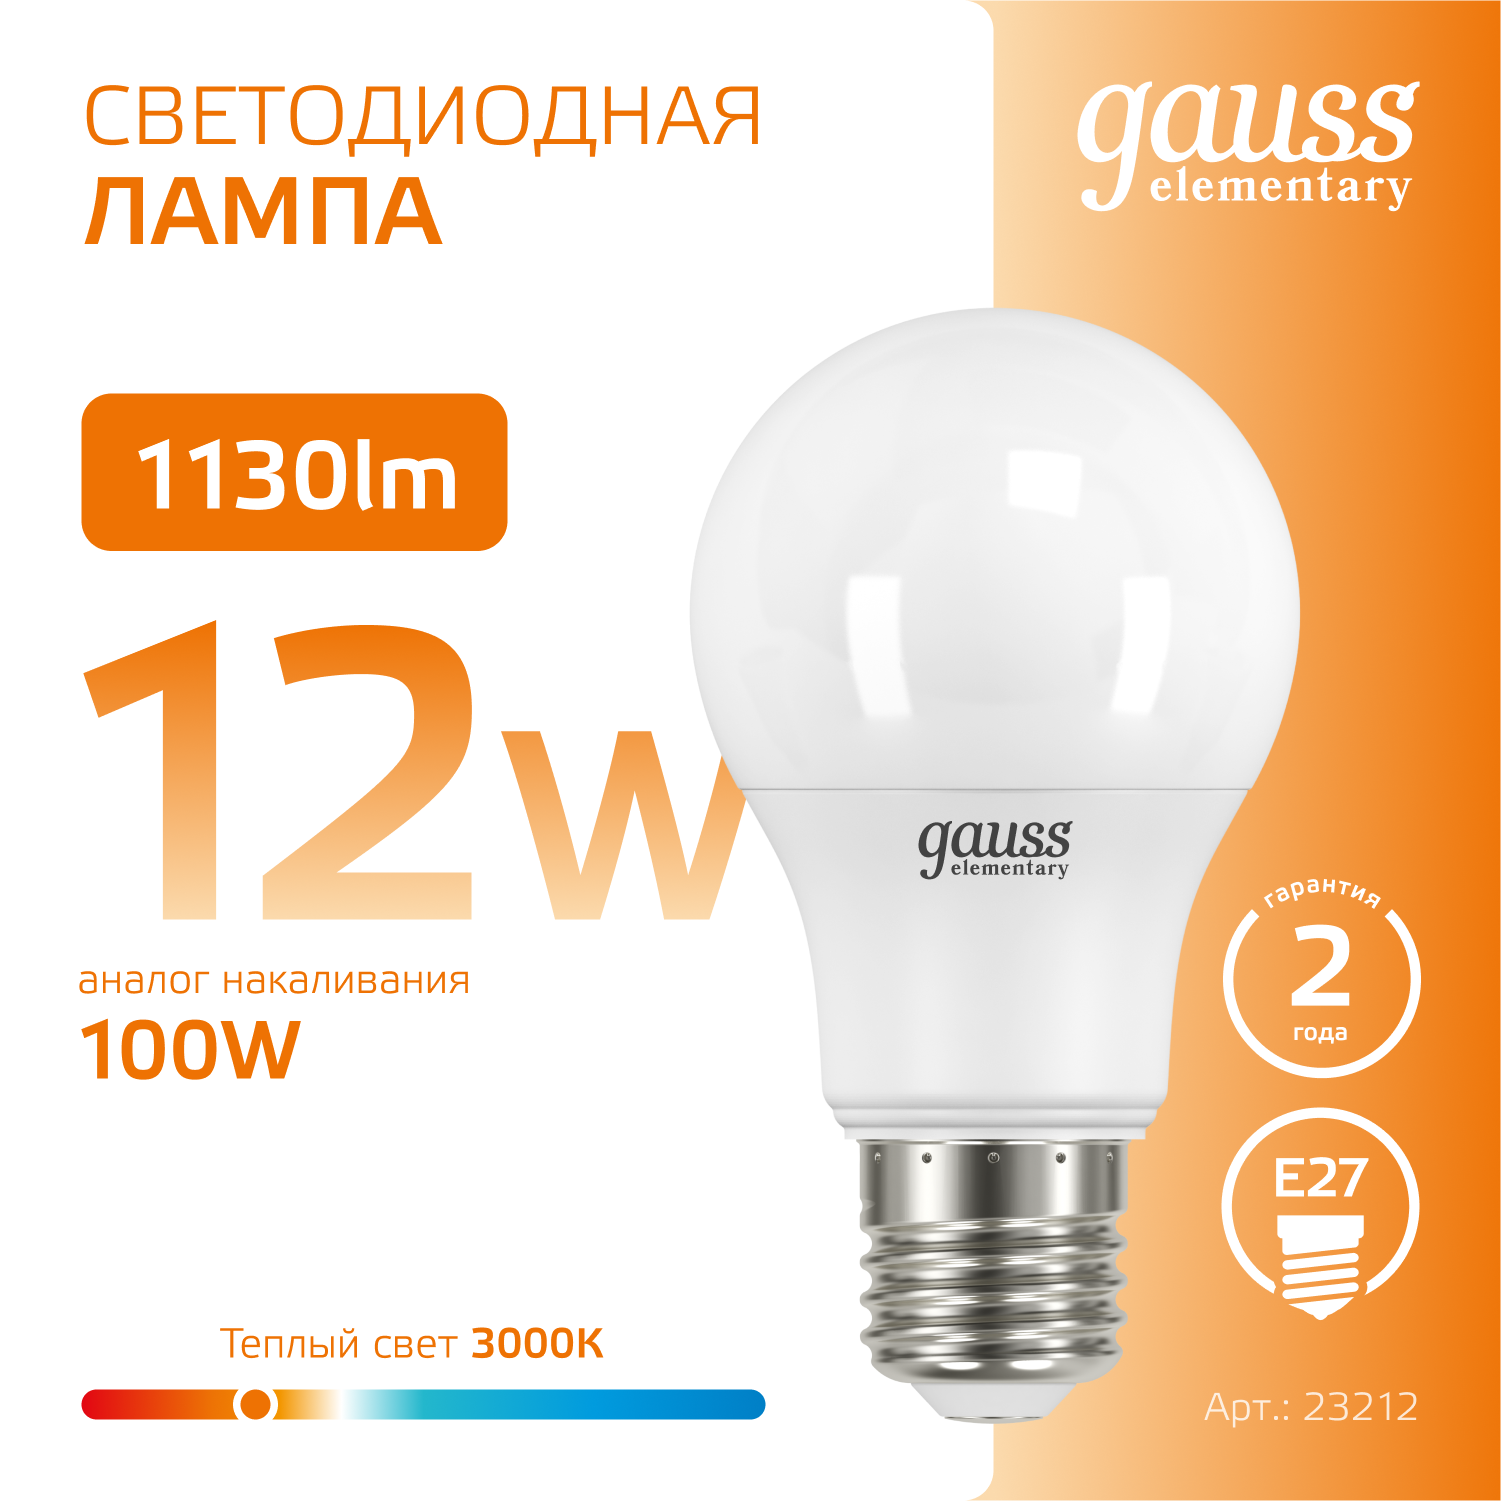 Лампочка светодиодная E27 Груша 12W теплый свет 3000К упаковка 10 шт. Gauss Elementary